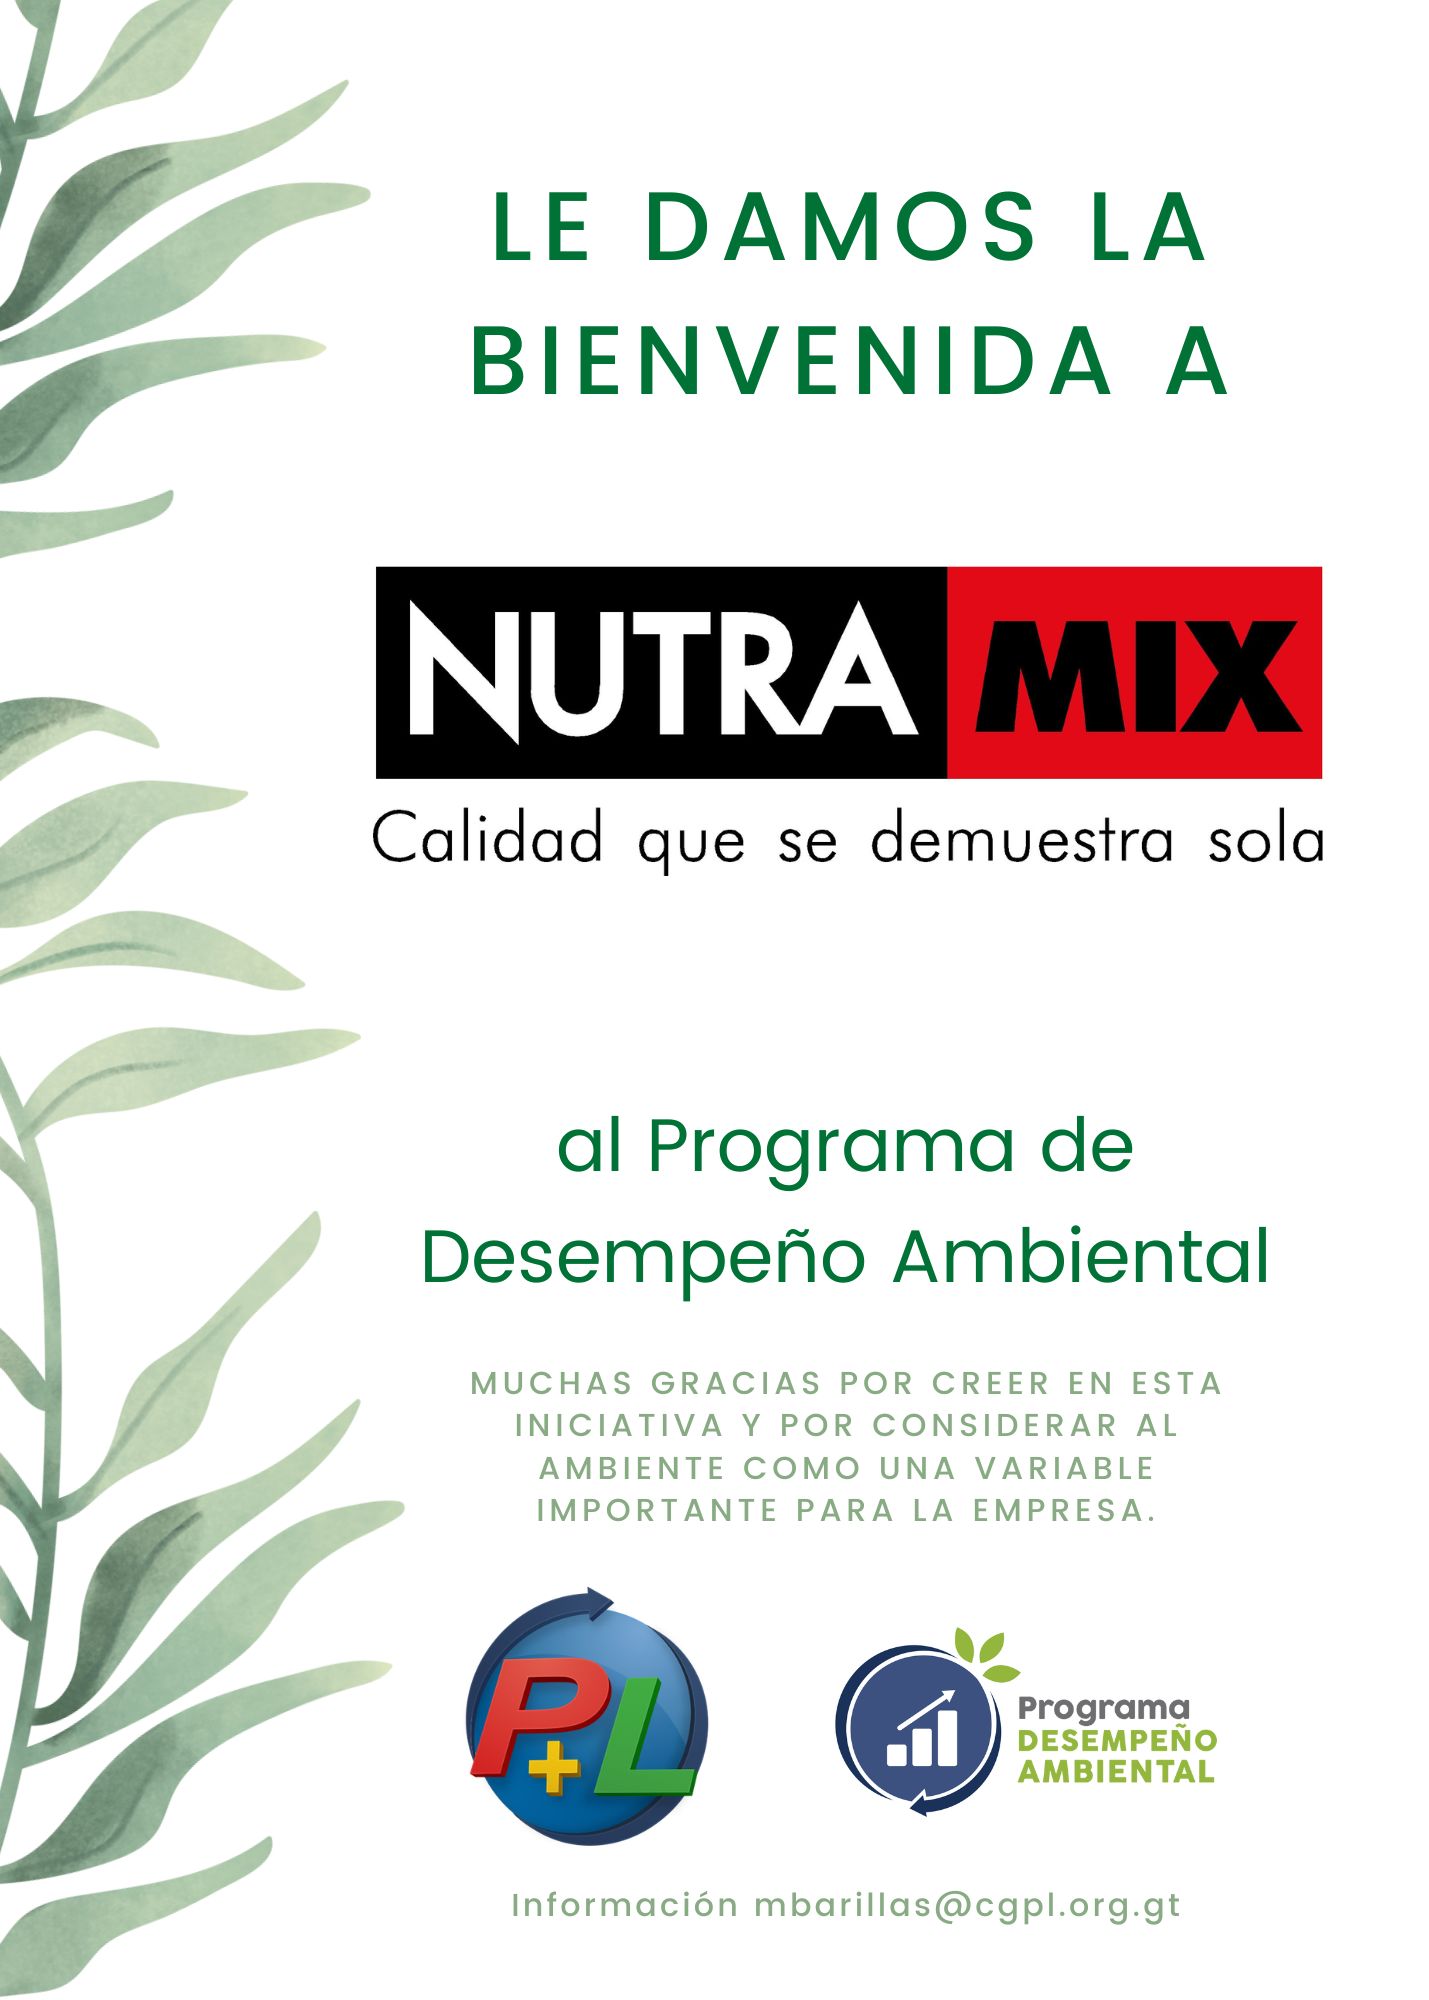 Bienvenida A Nuestro Nuevo Afiliado Del Programa De Desempeño Ambiental!, Nutramix